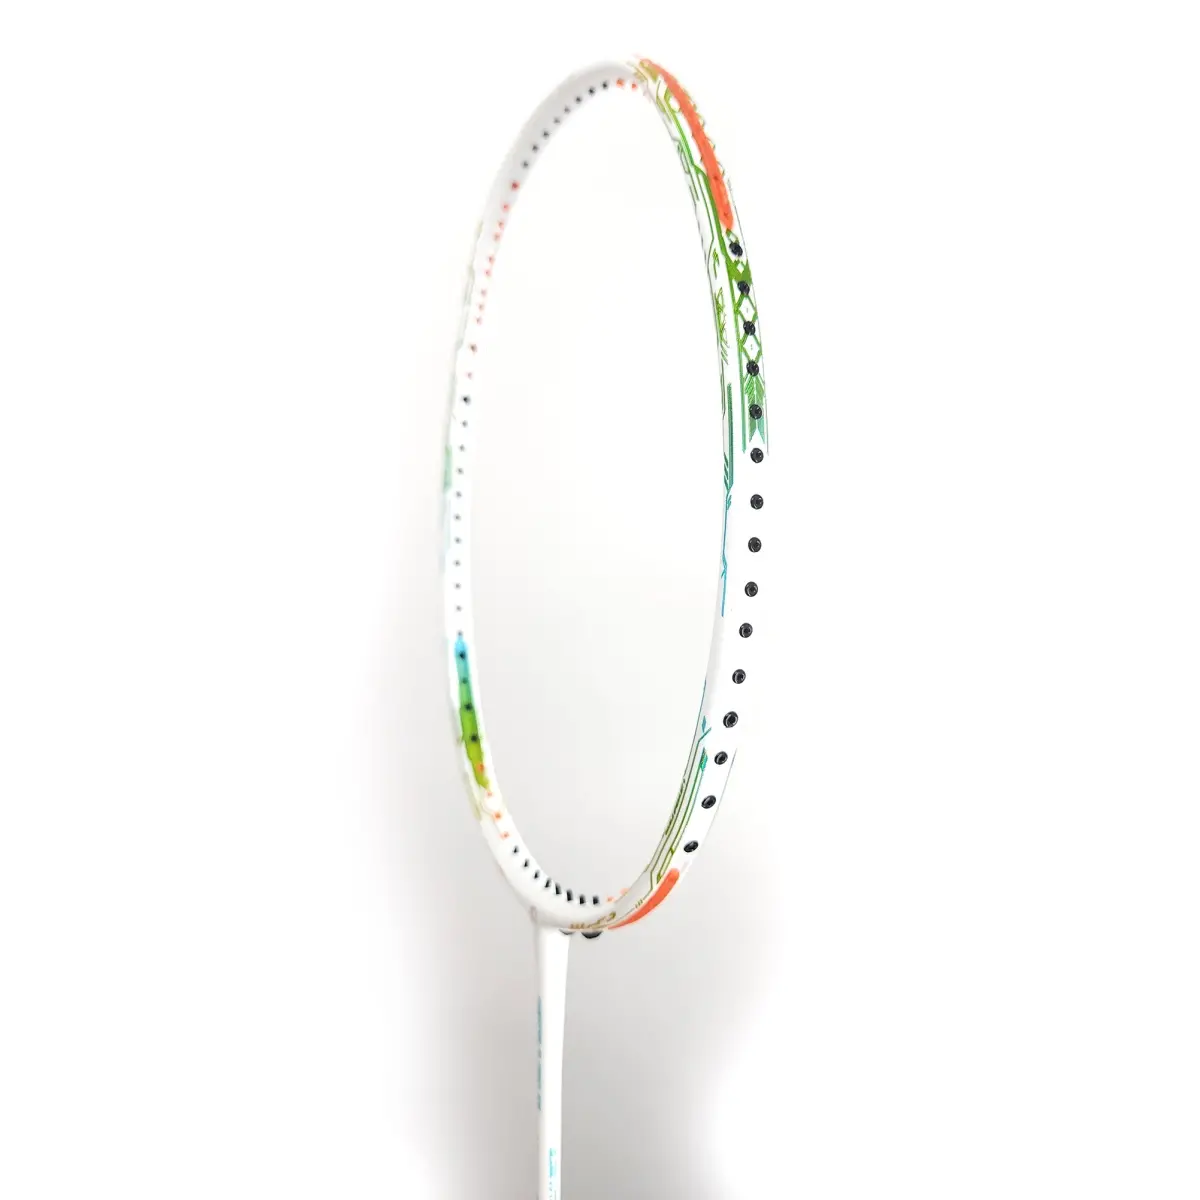 Buy Apacs Fantala Pro 101 Badminton Racket - Sportsuncle